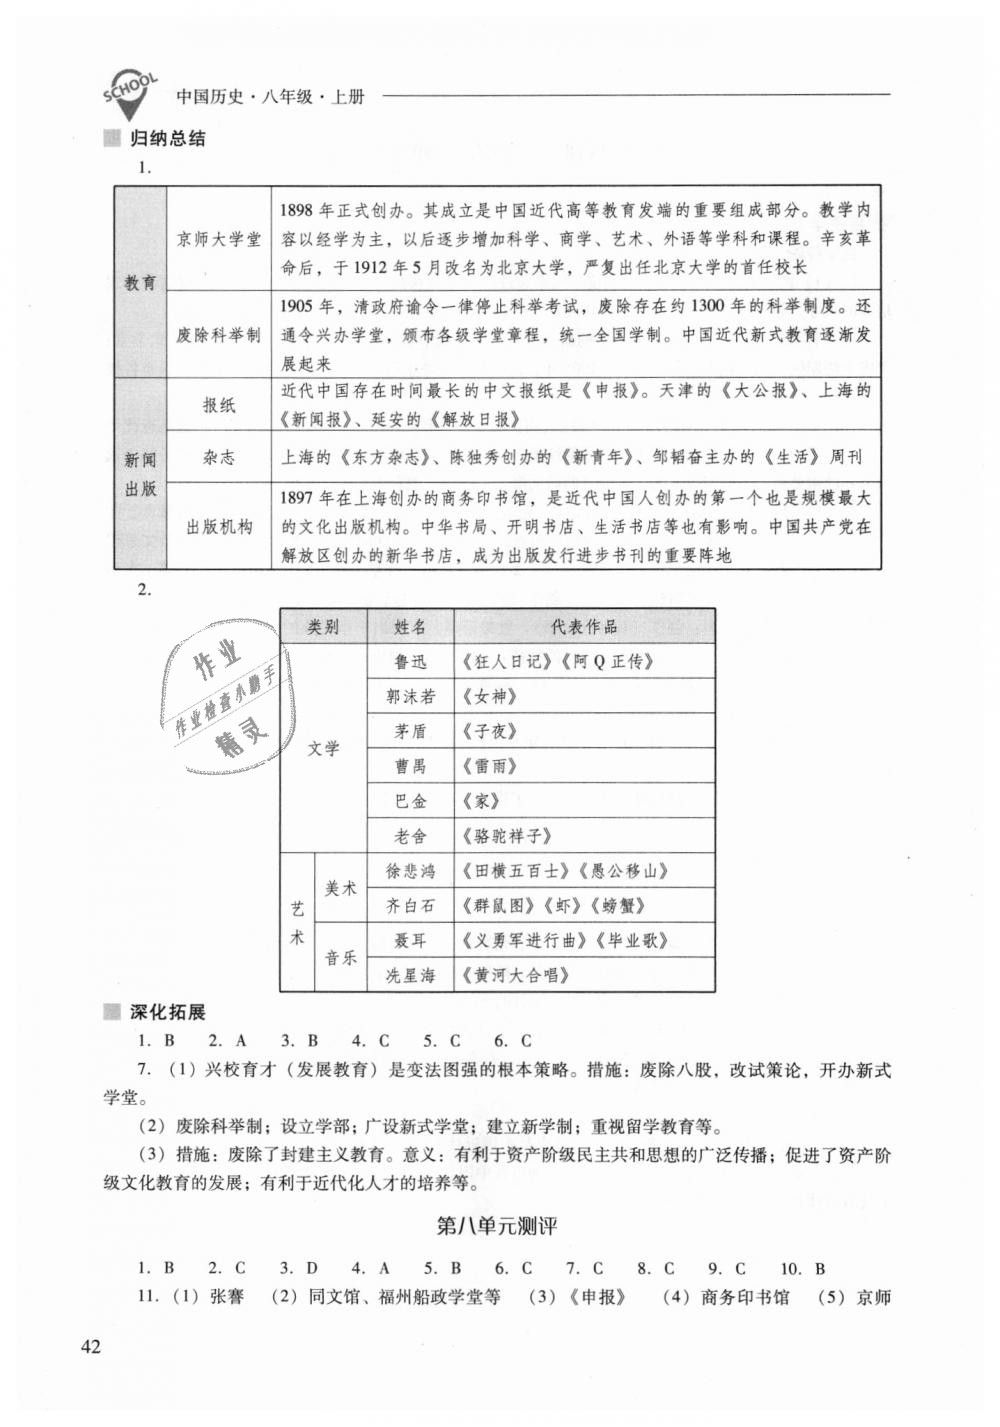 2018年新课程问题解决导学方案八年级中国历史上册人教版 第42页